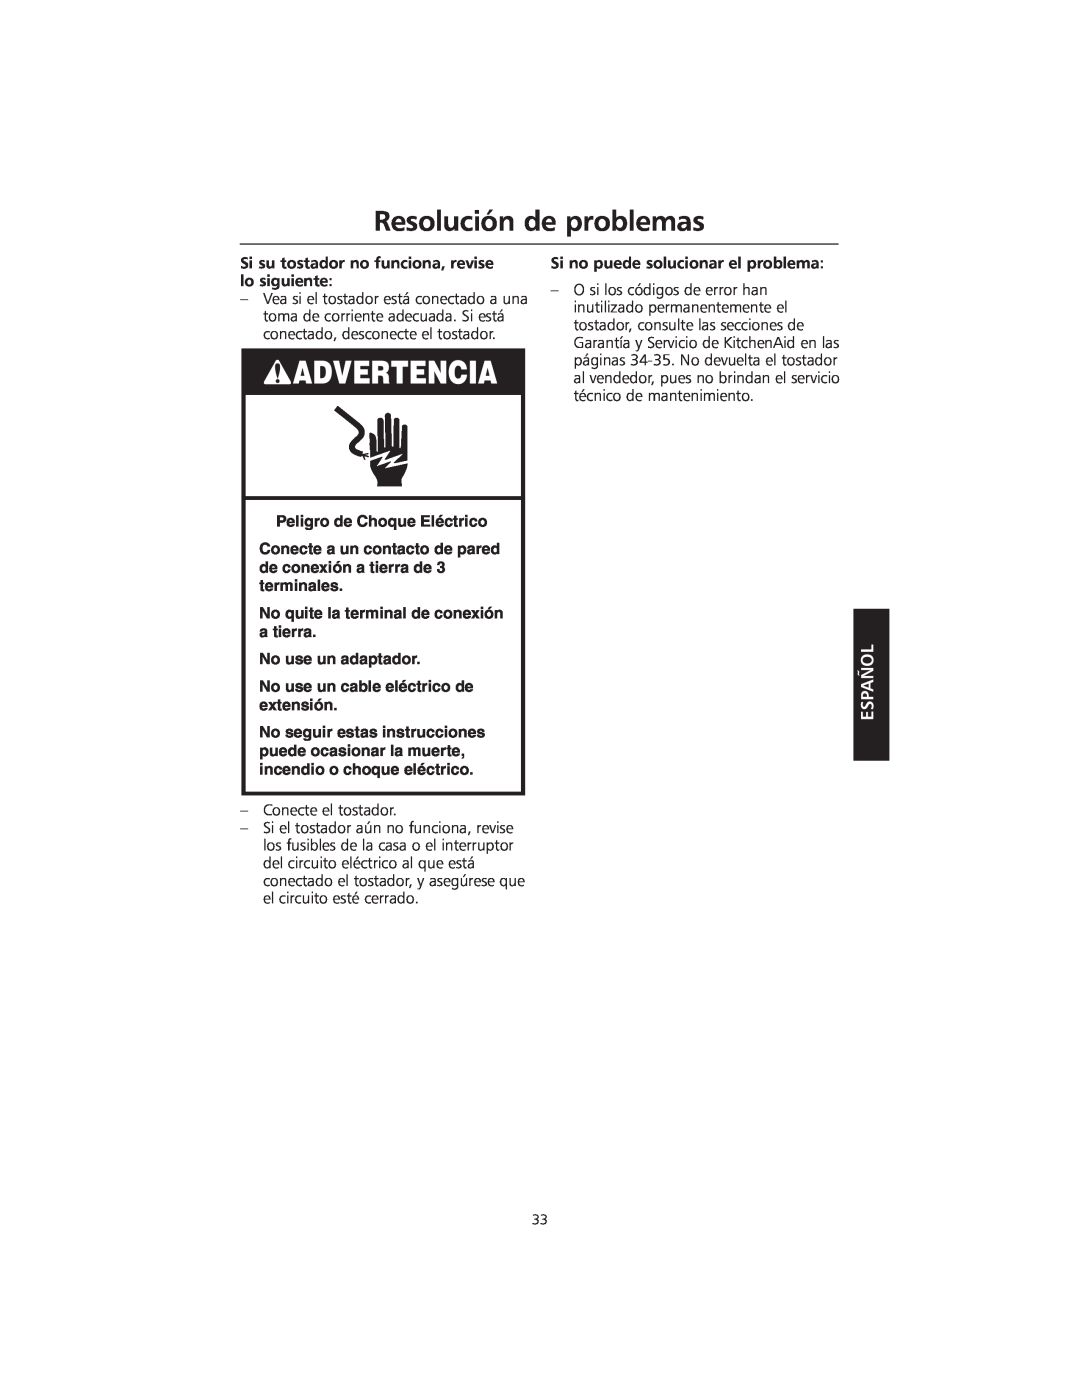 KitchenAid KMTT200 manual Resolución de problemas, Advertencia, Español, Peligro de Choque Eléctrico 